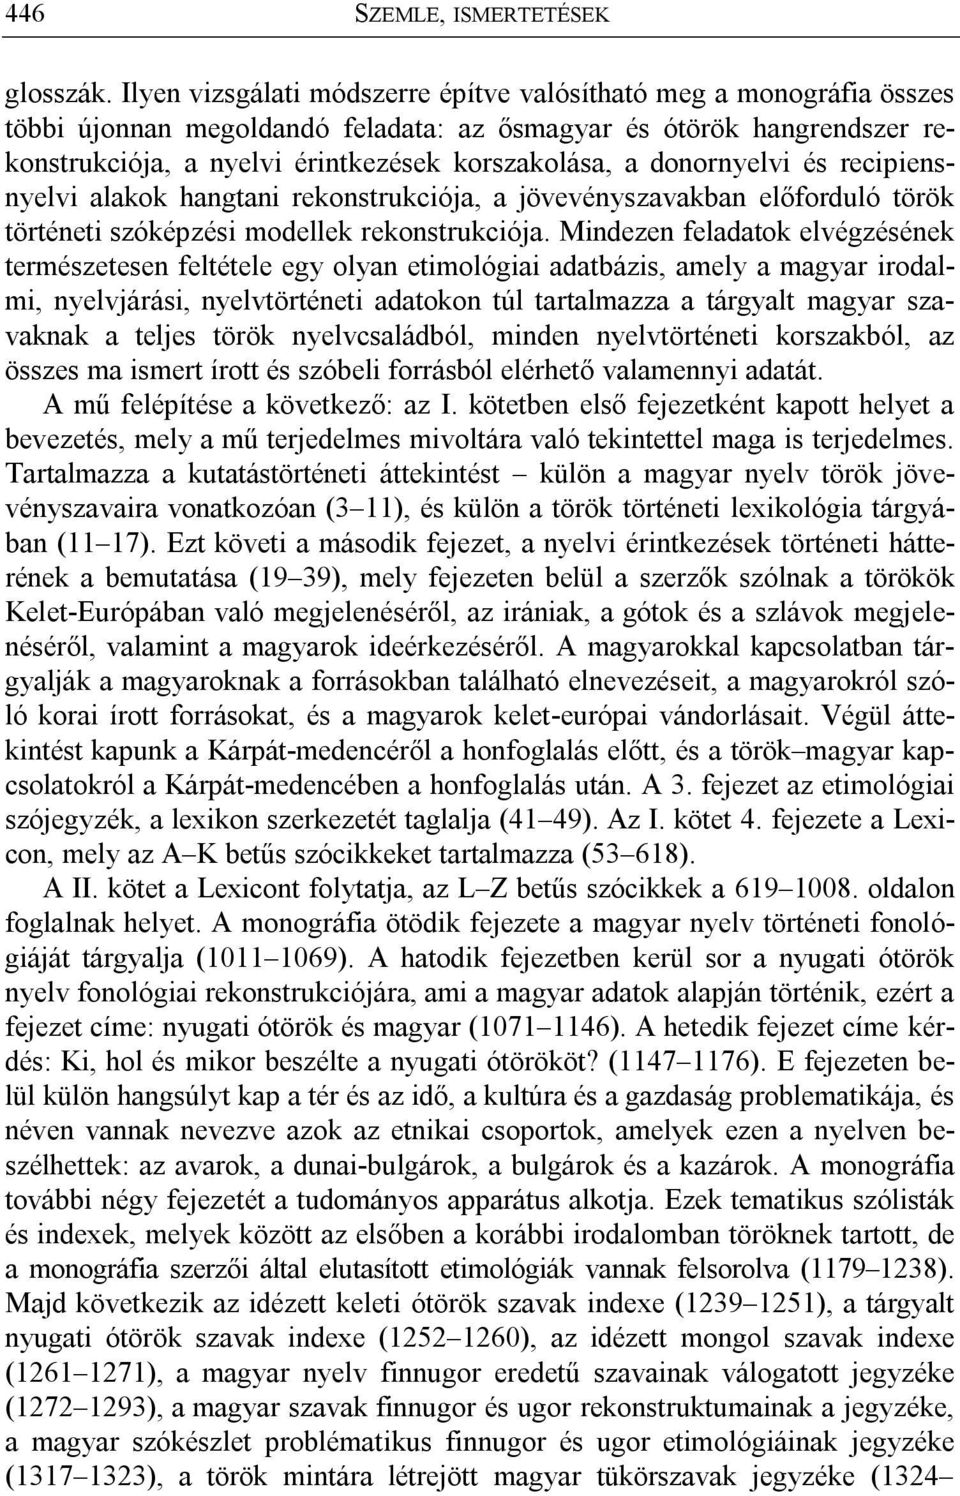 donornyelvi és recipiensnyelvi alakok hangtani rekonstrukciója, a jövevényszavakban előforduló török történeti szóképzési modellek rekonstrukciója.